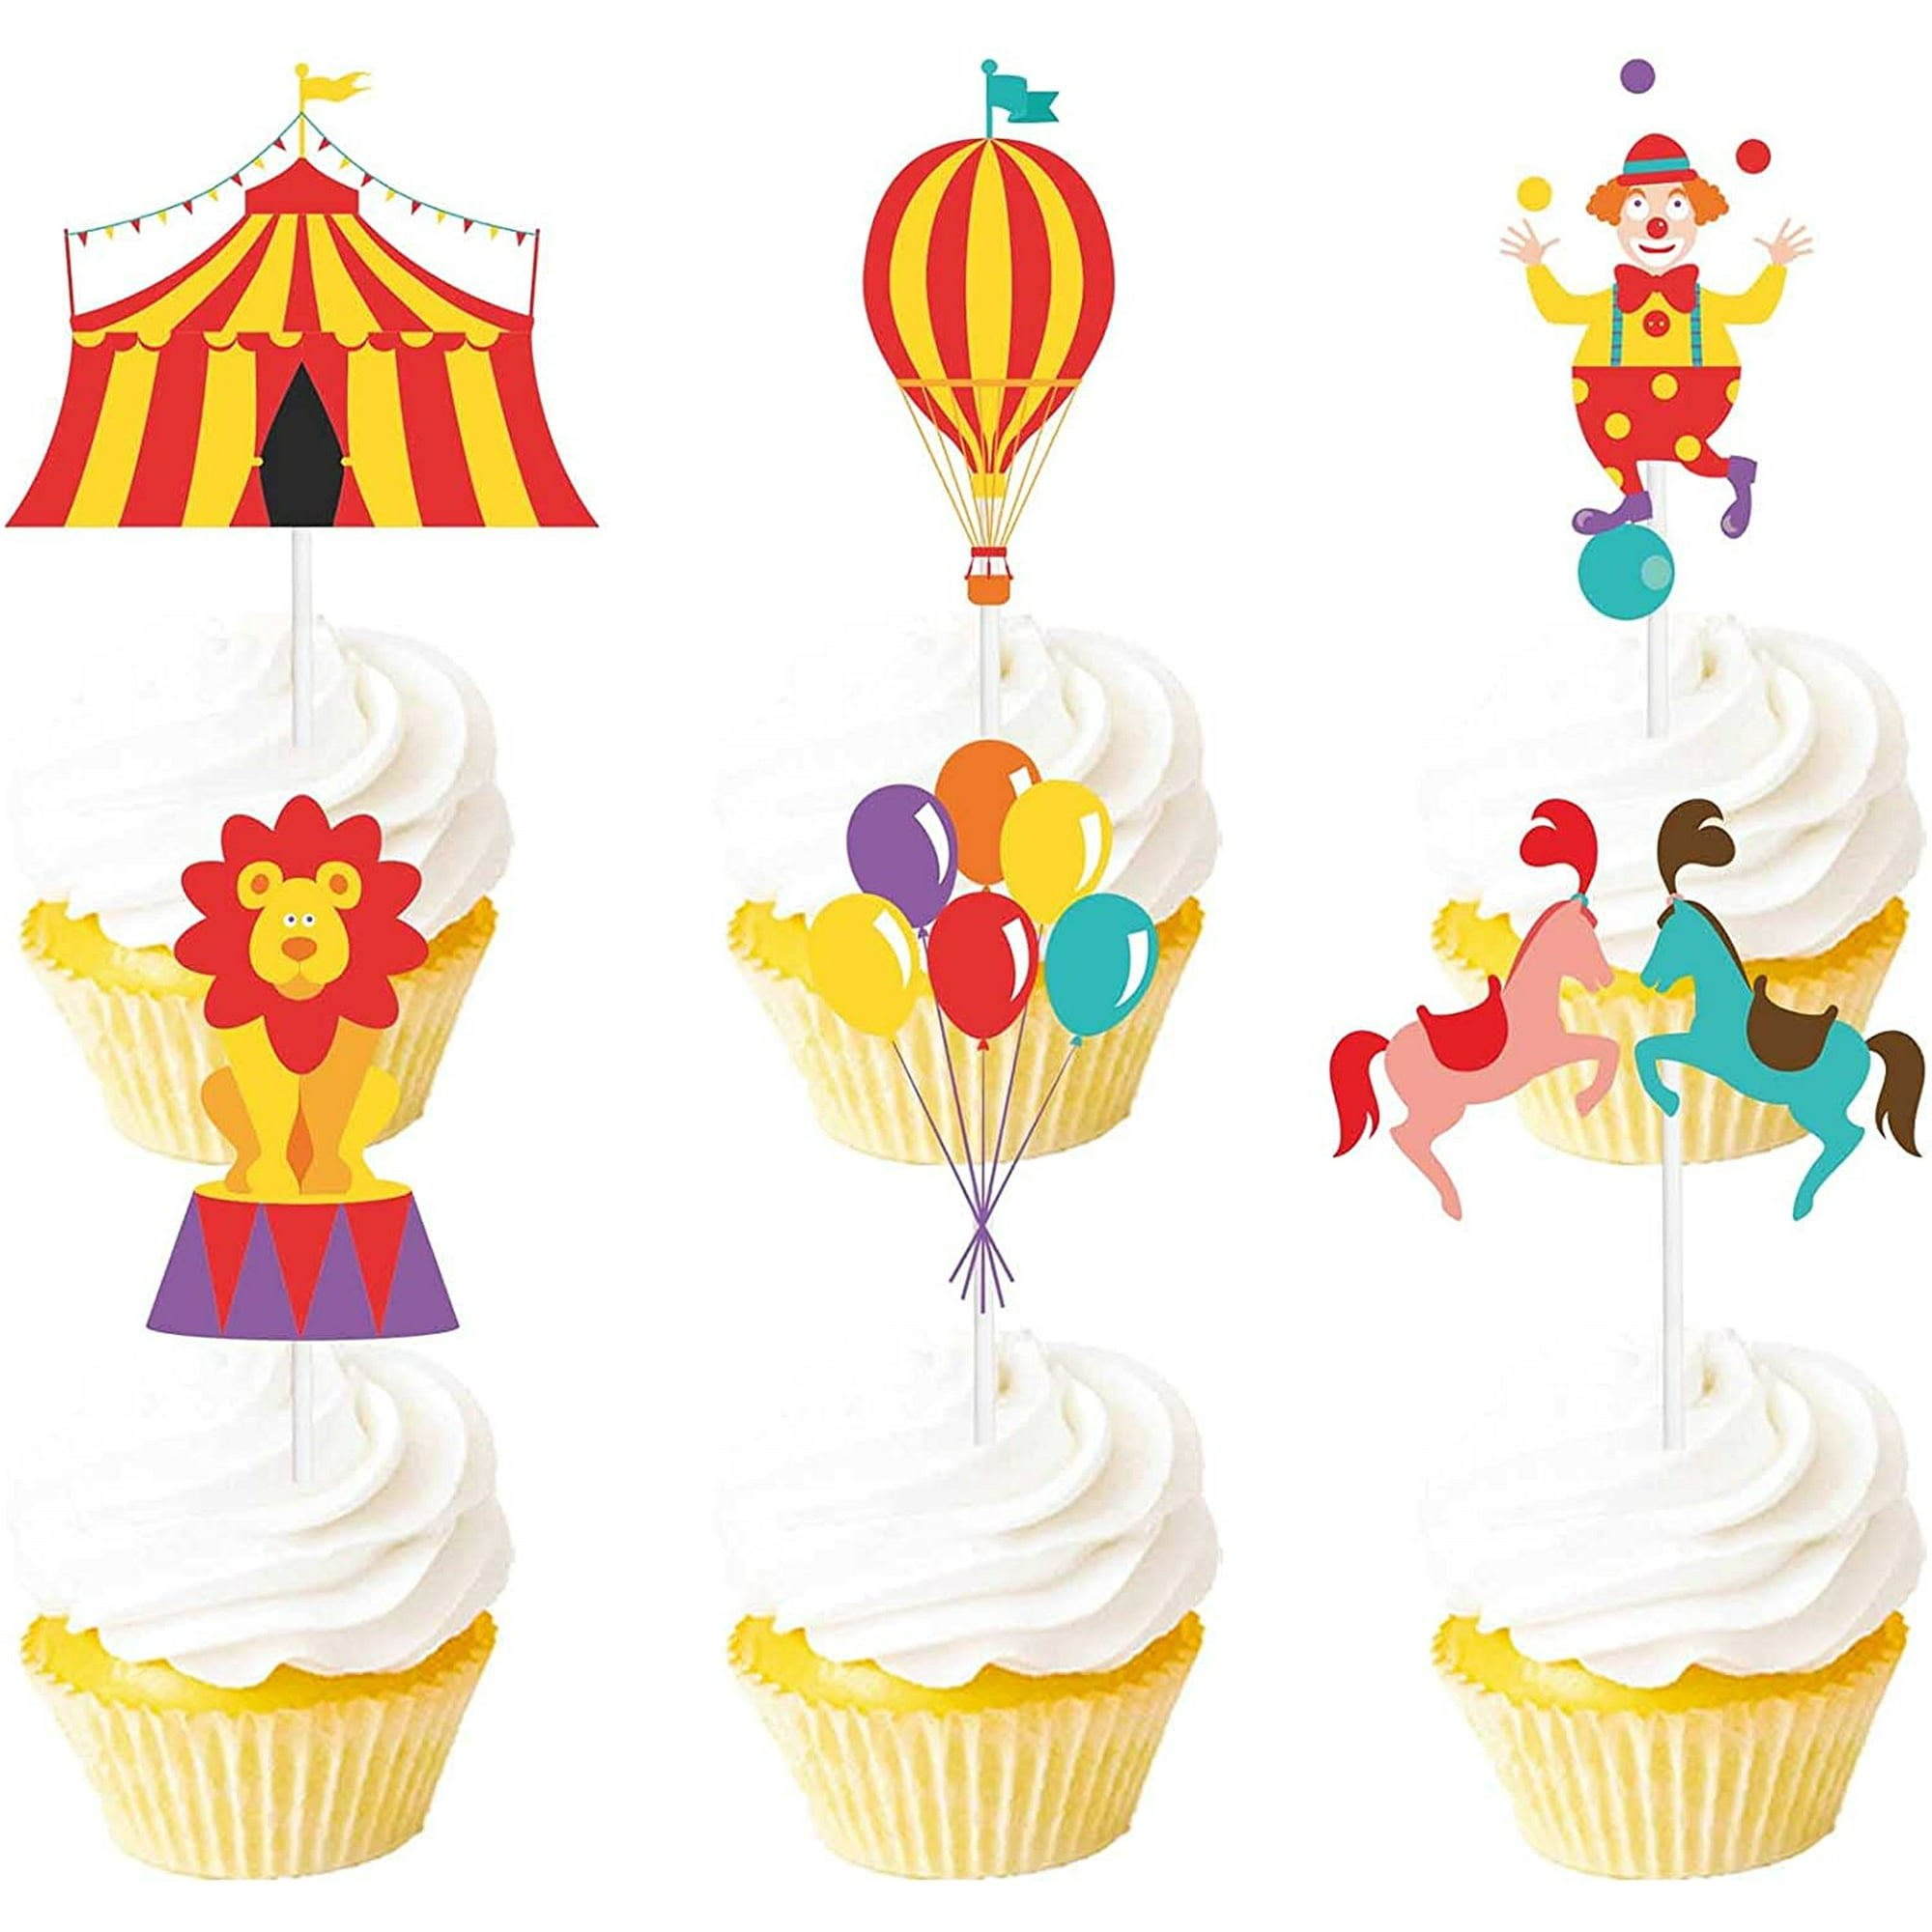 Décoration de gâteau sur le thème du cirque et du carnaval - Pour